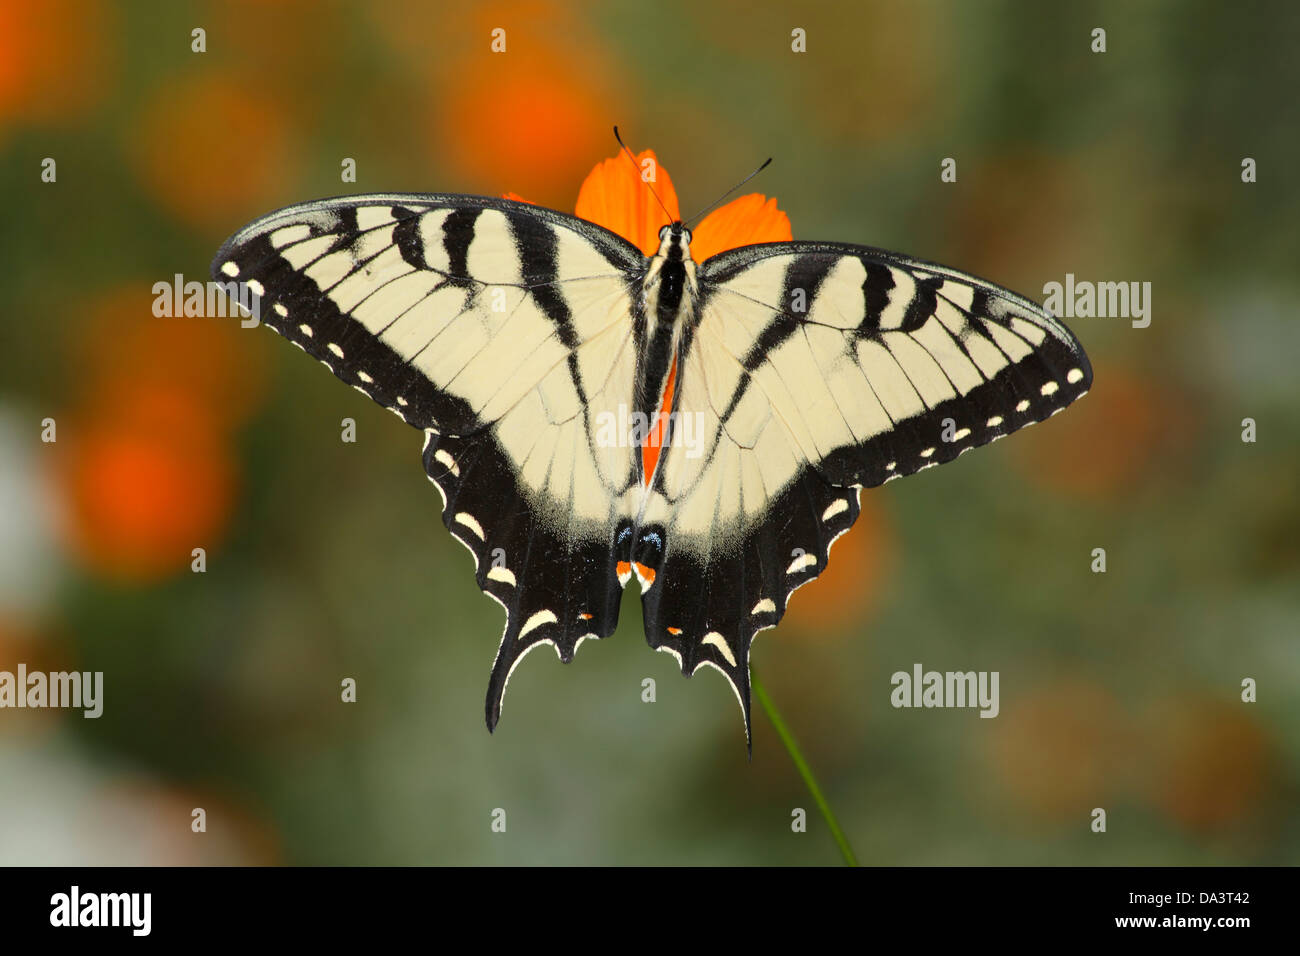 L'est un Tiger Swallowtail Butterfly sur une fleur orangée, Papilio glaucus Linnaeus Banque D'Images